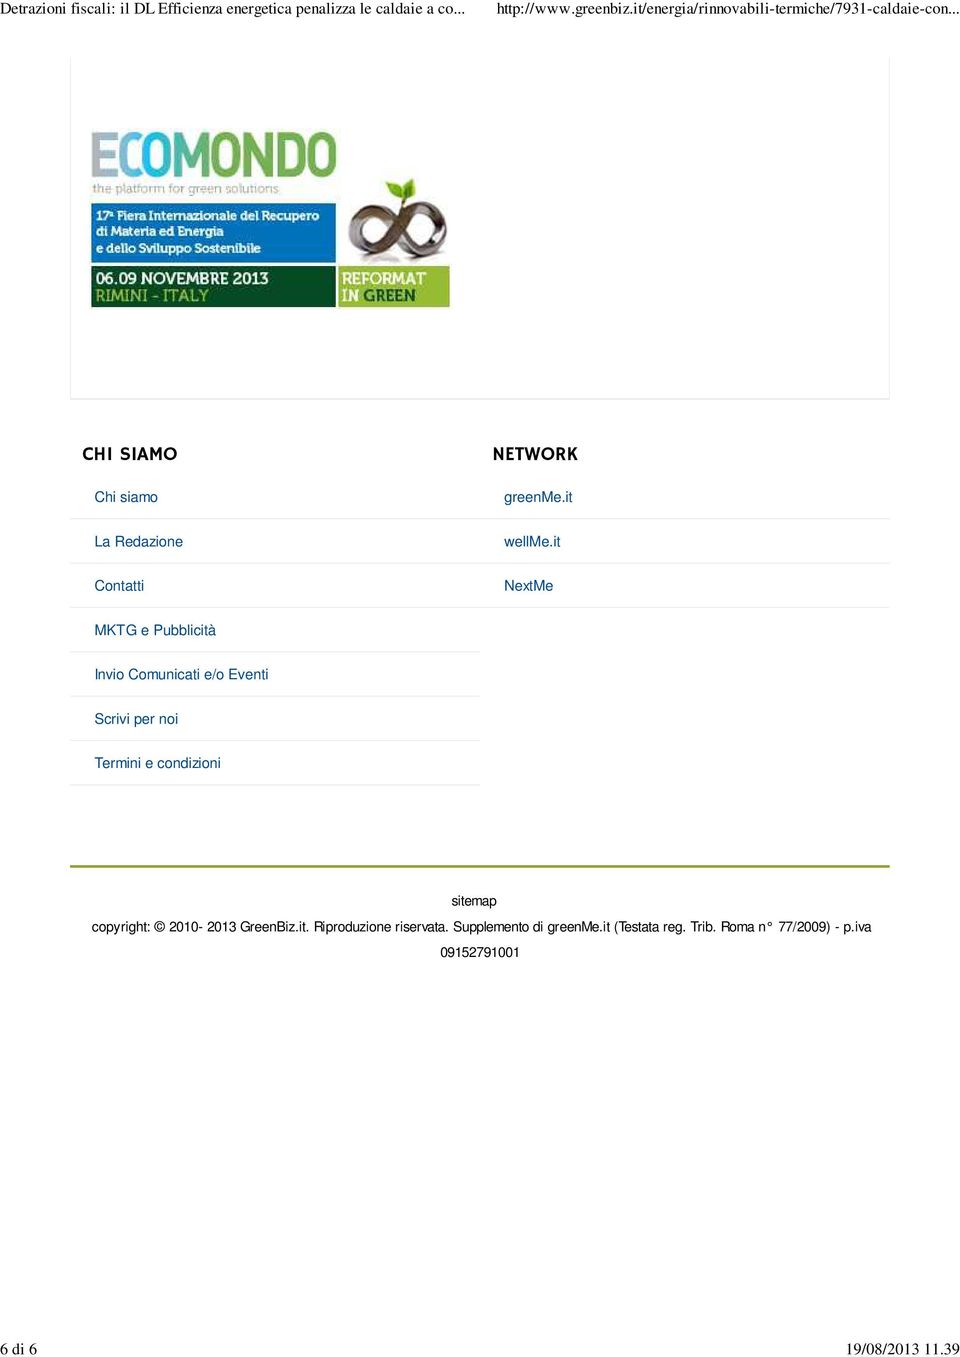 Termini e condizioni sitemap copyright: 2010-2013 GreenBiz.it. Riproduzione riservata.